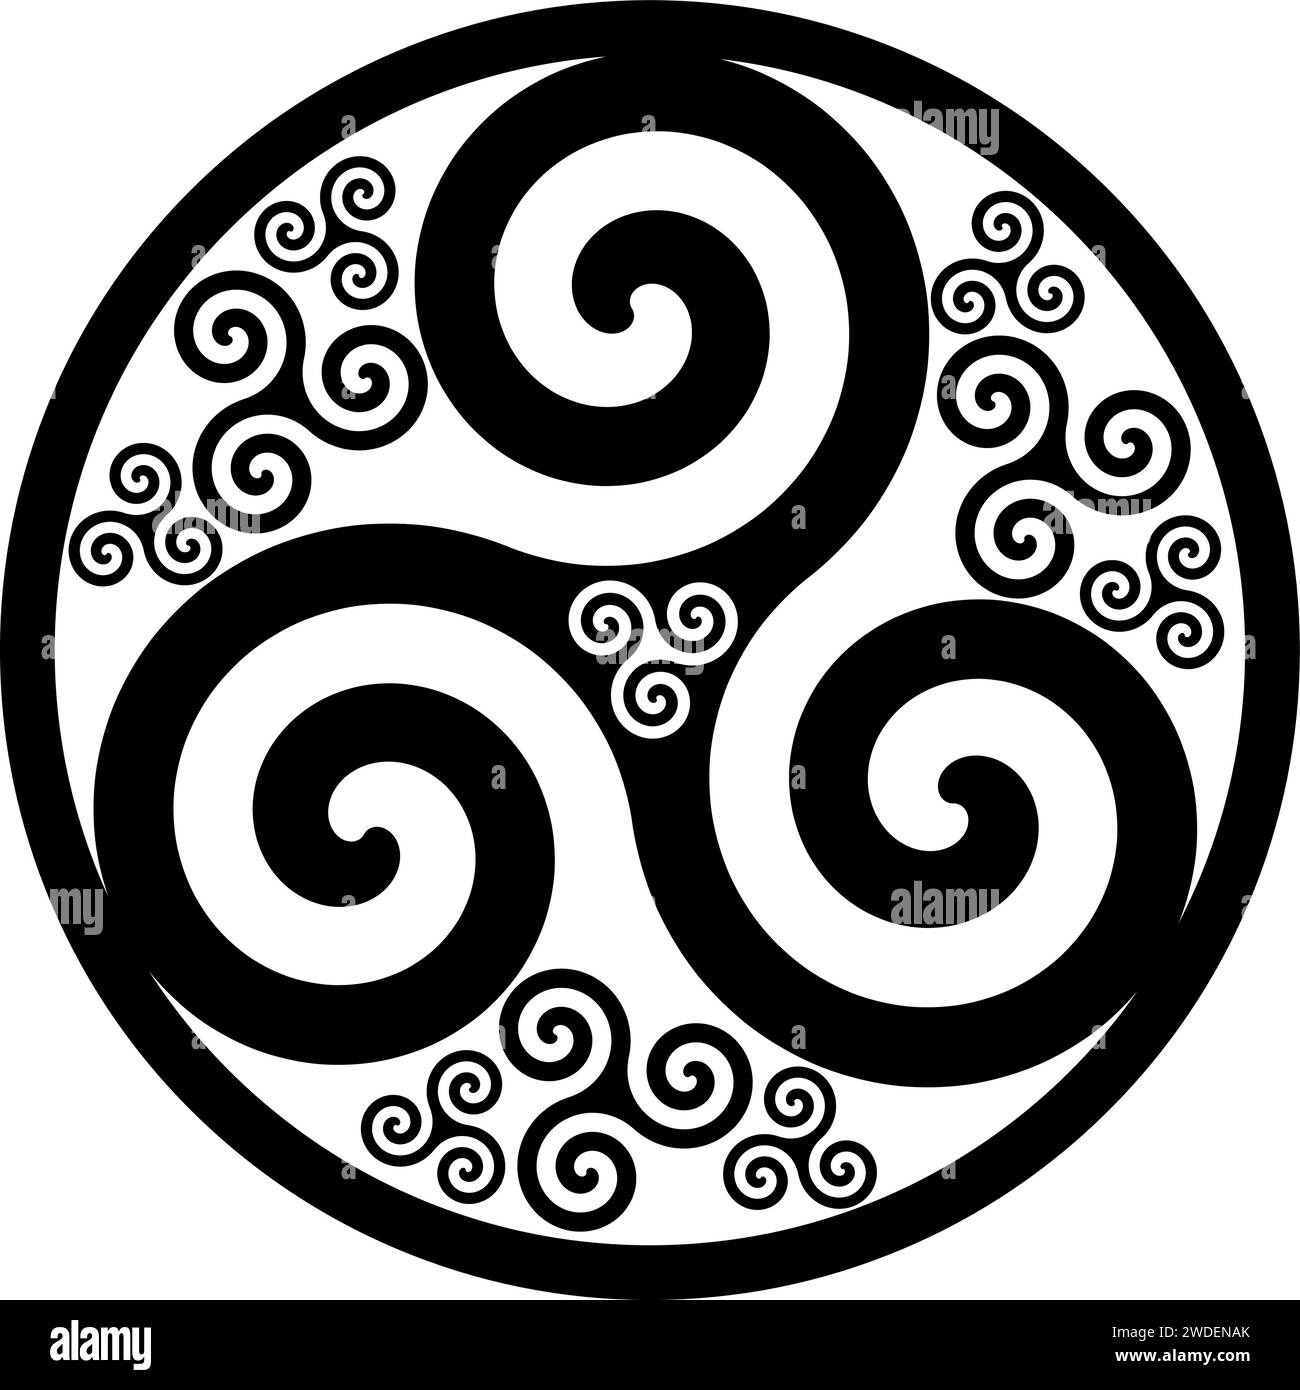 Keltisches Symbol - Keltischer Knoten und Triskelion Kreis - Trinität - Heilige Geometrie - Energie Stock Vektor